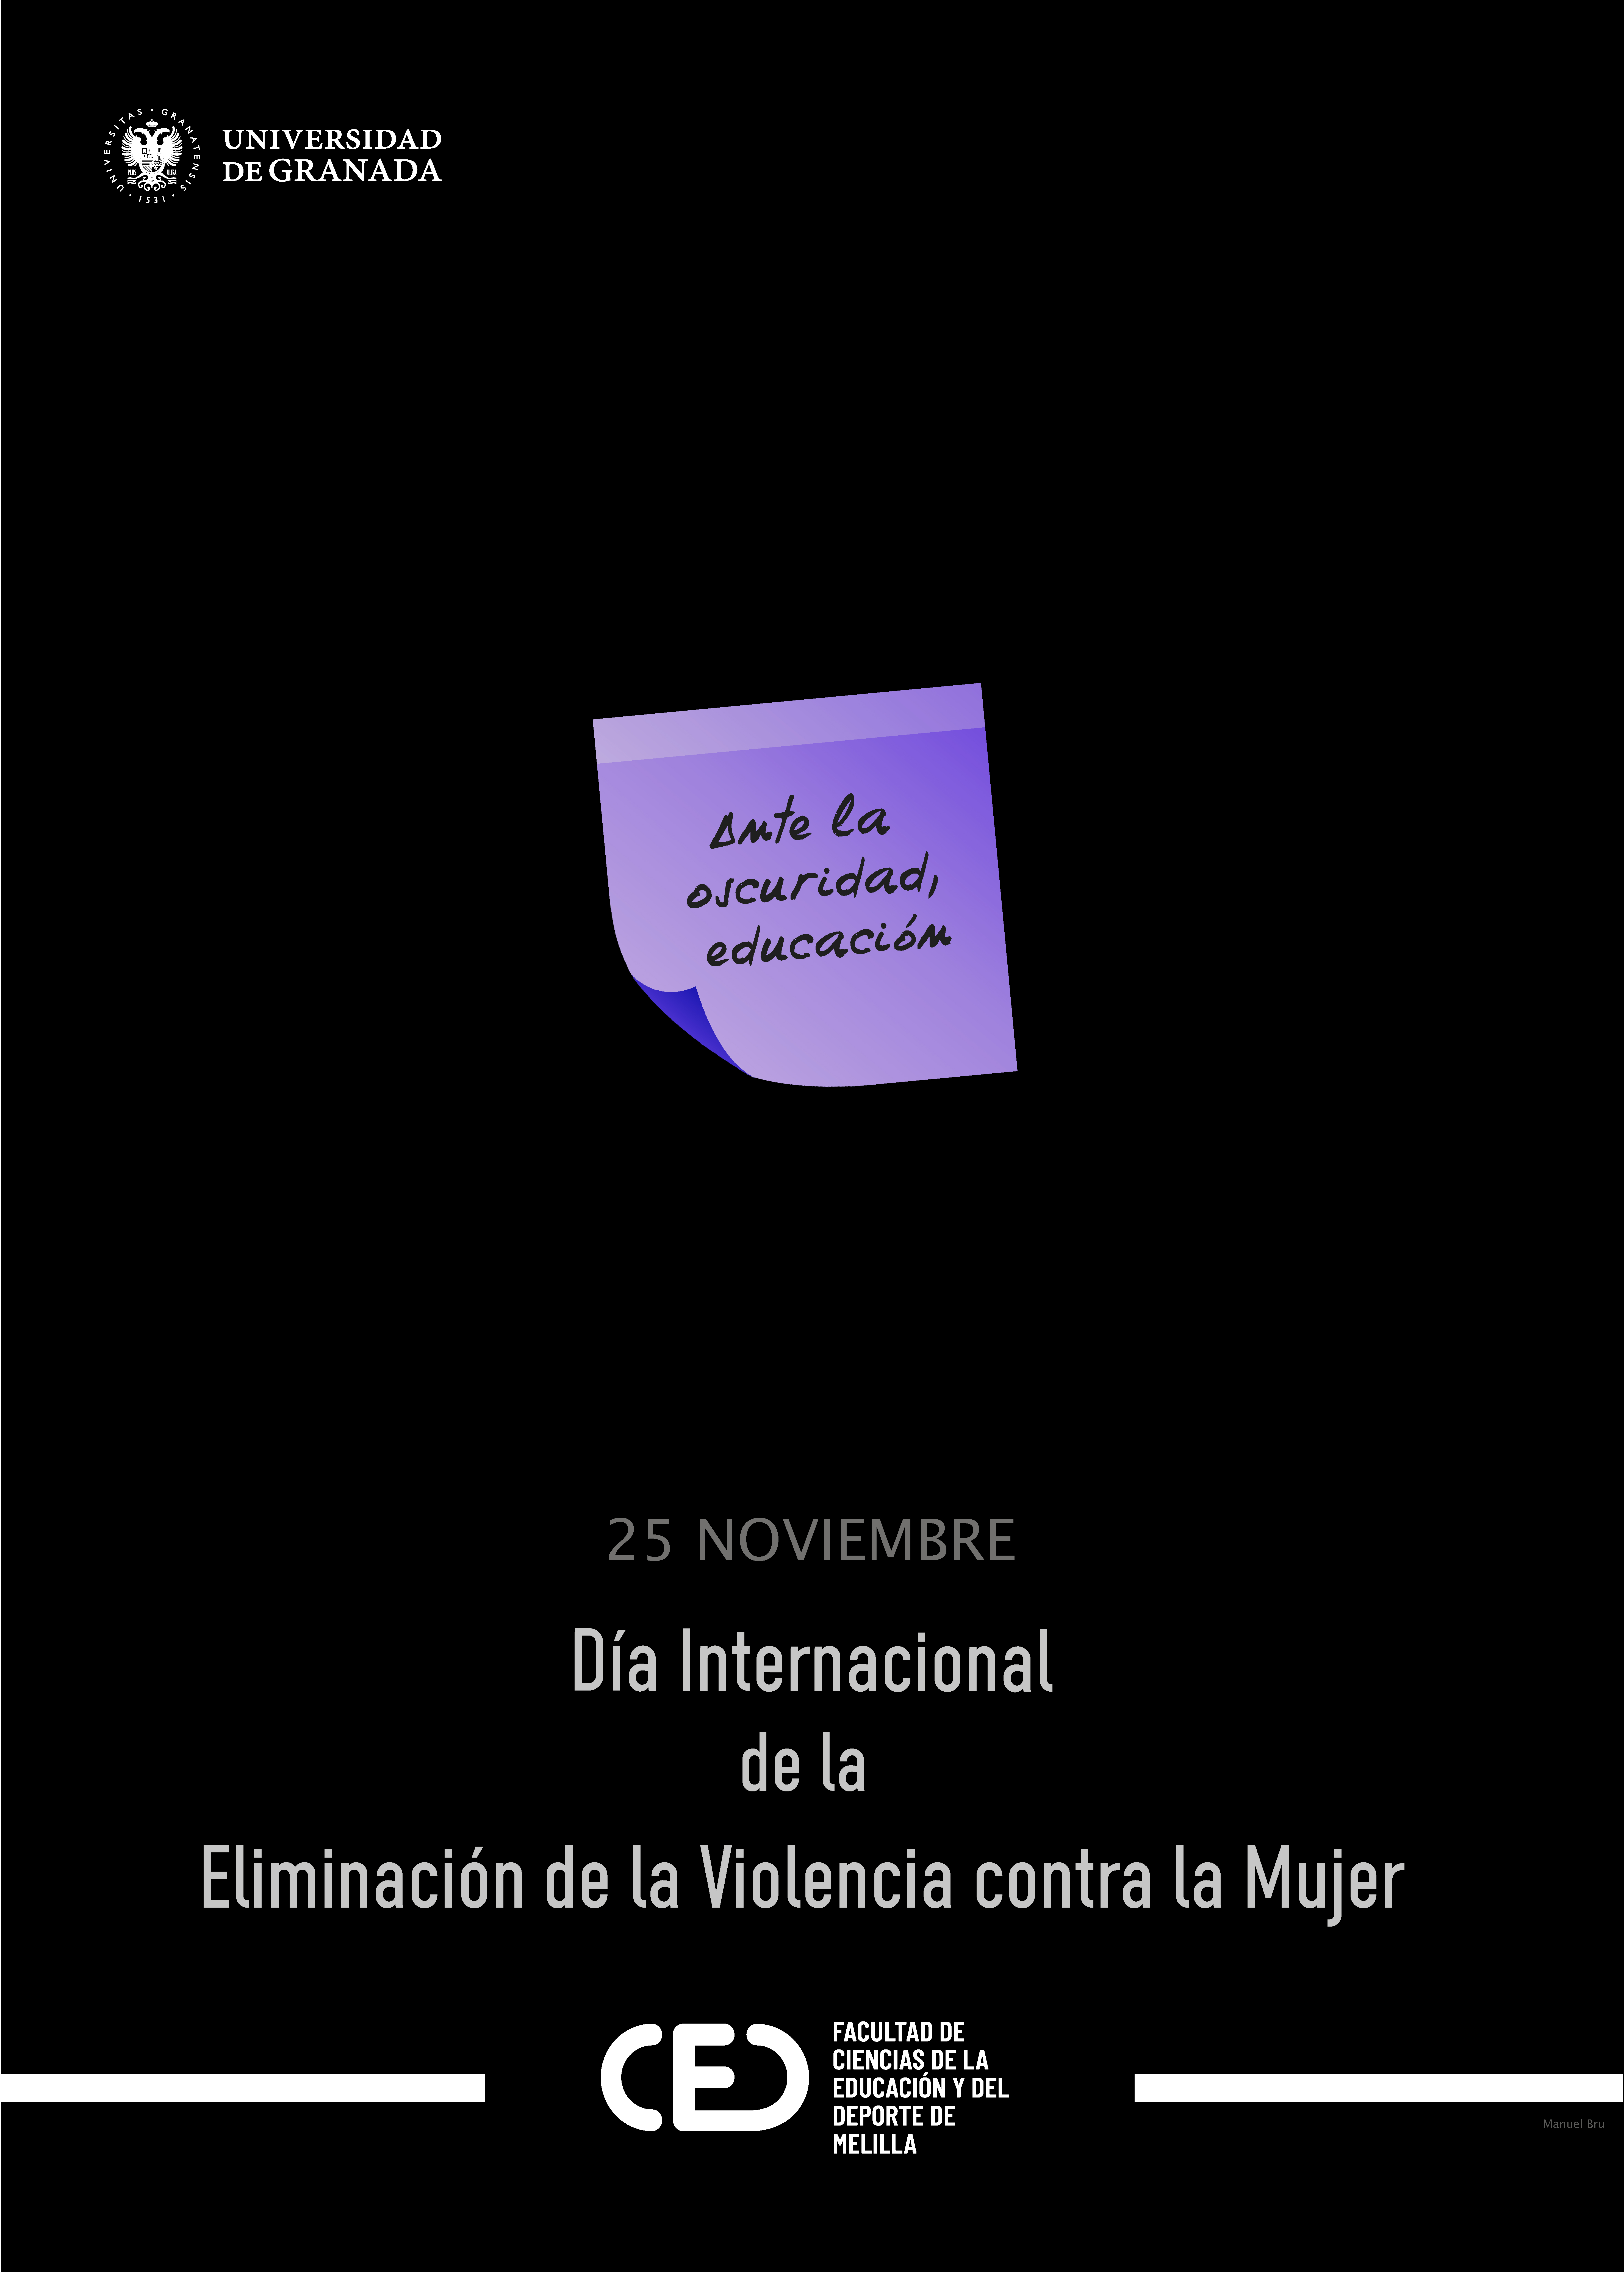 Ante la oscuridad, educación: 25N Día Internacional de Eliminación de Violencia contra las Mujeres